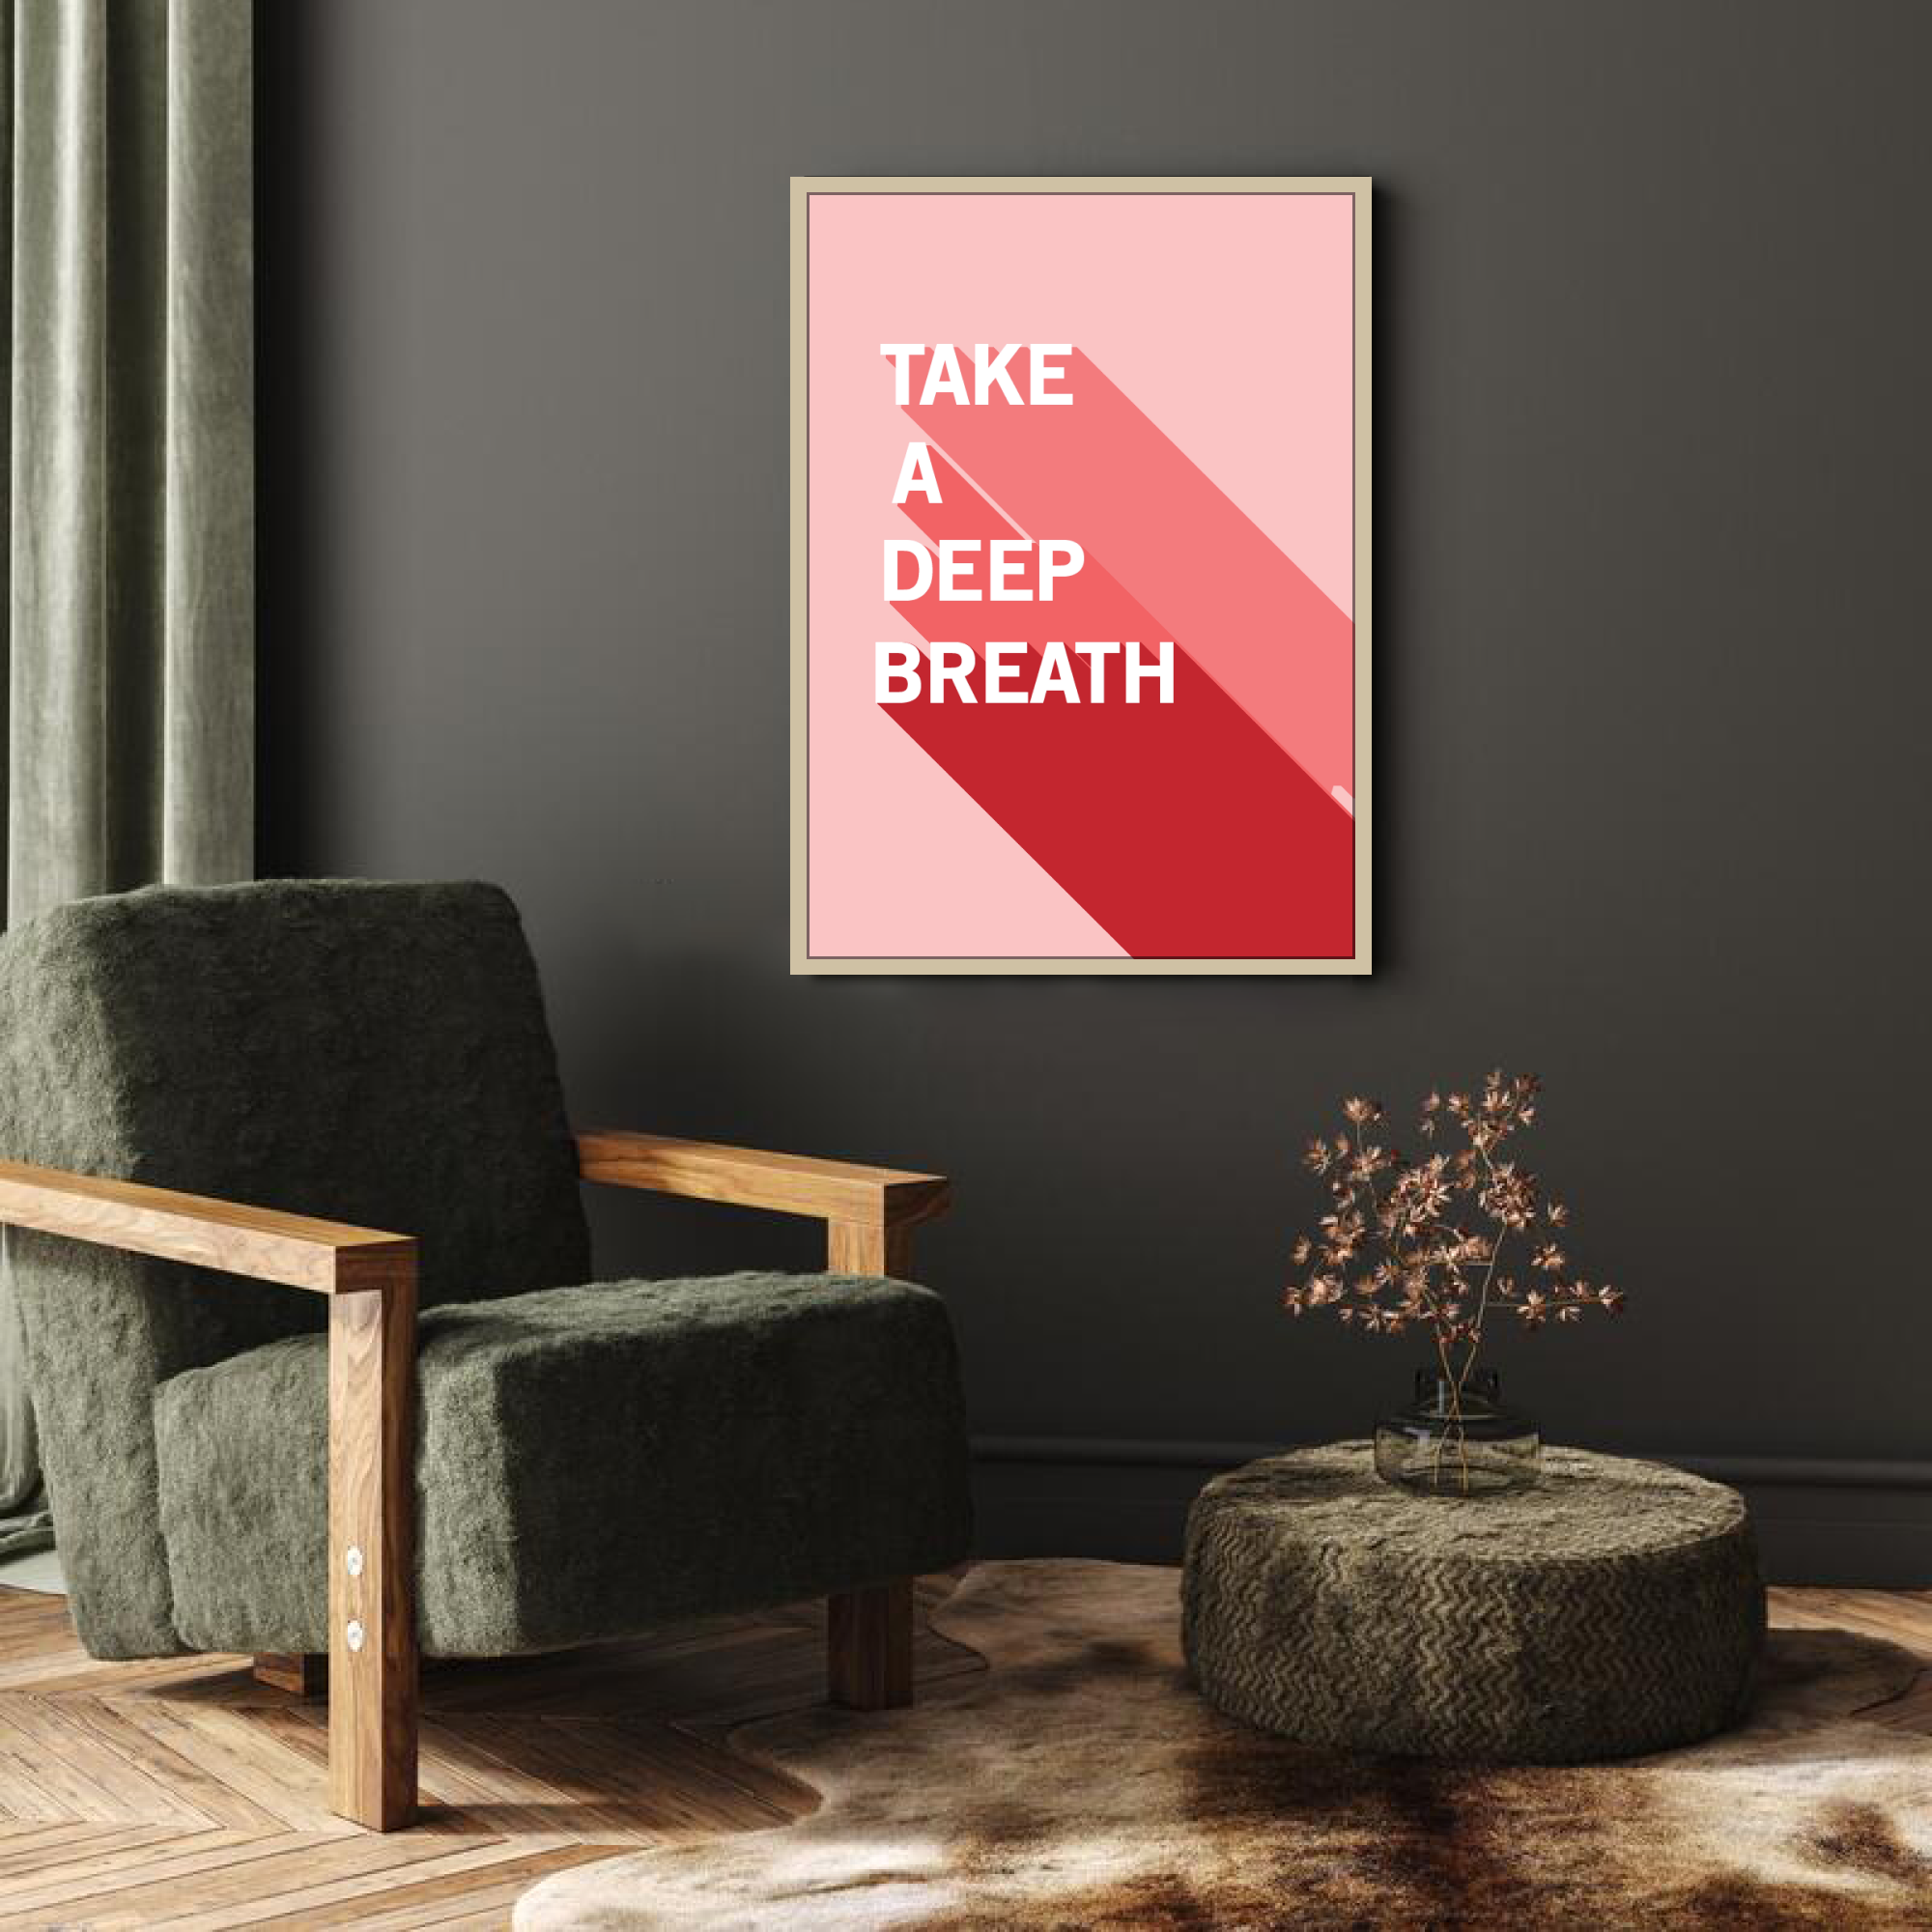 Poster: "Take A Deep Breath"